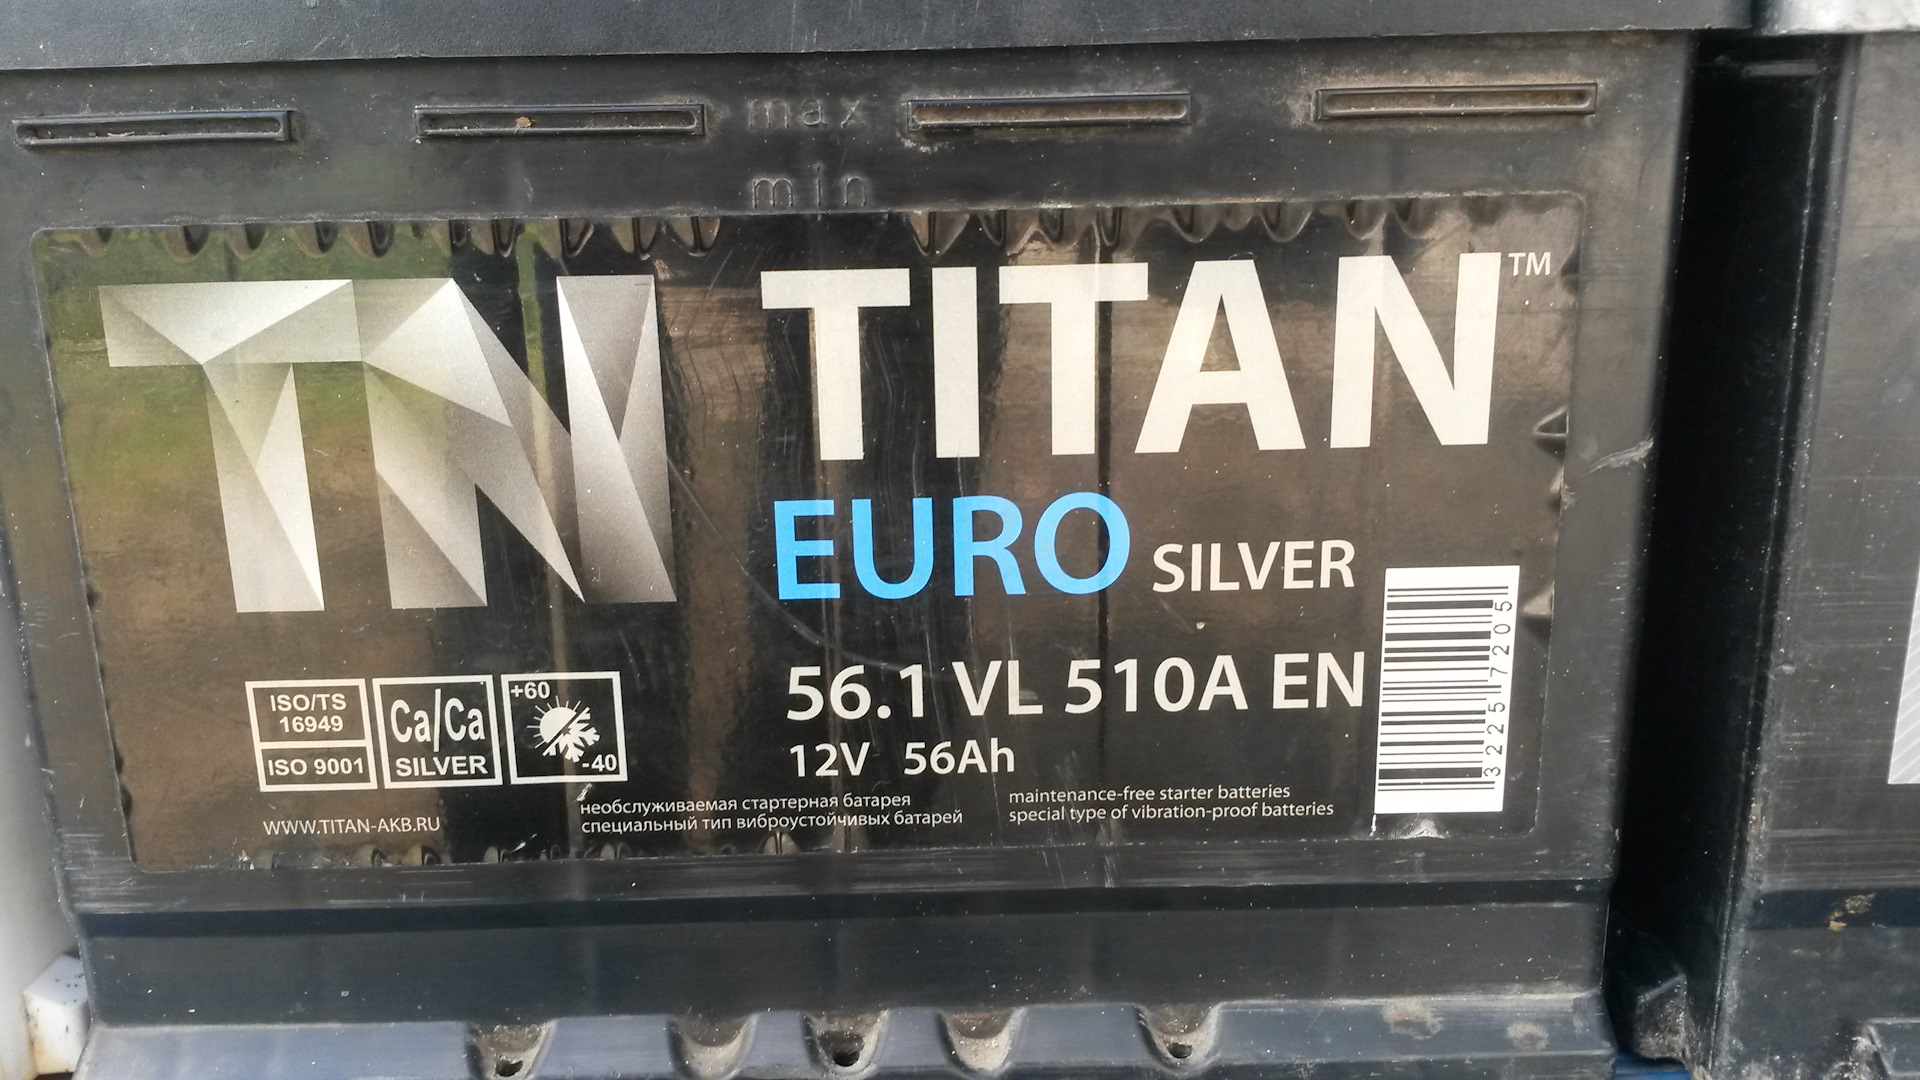 Дата аккумулятора титан. Titan Euro Silver 61.1. Аккумулятор Титан евро Сильвер 61.1. АКБ Титан 72. Titan аккумулятор плакаты.